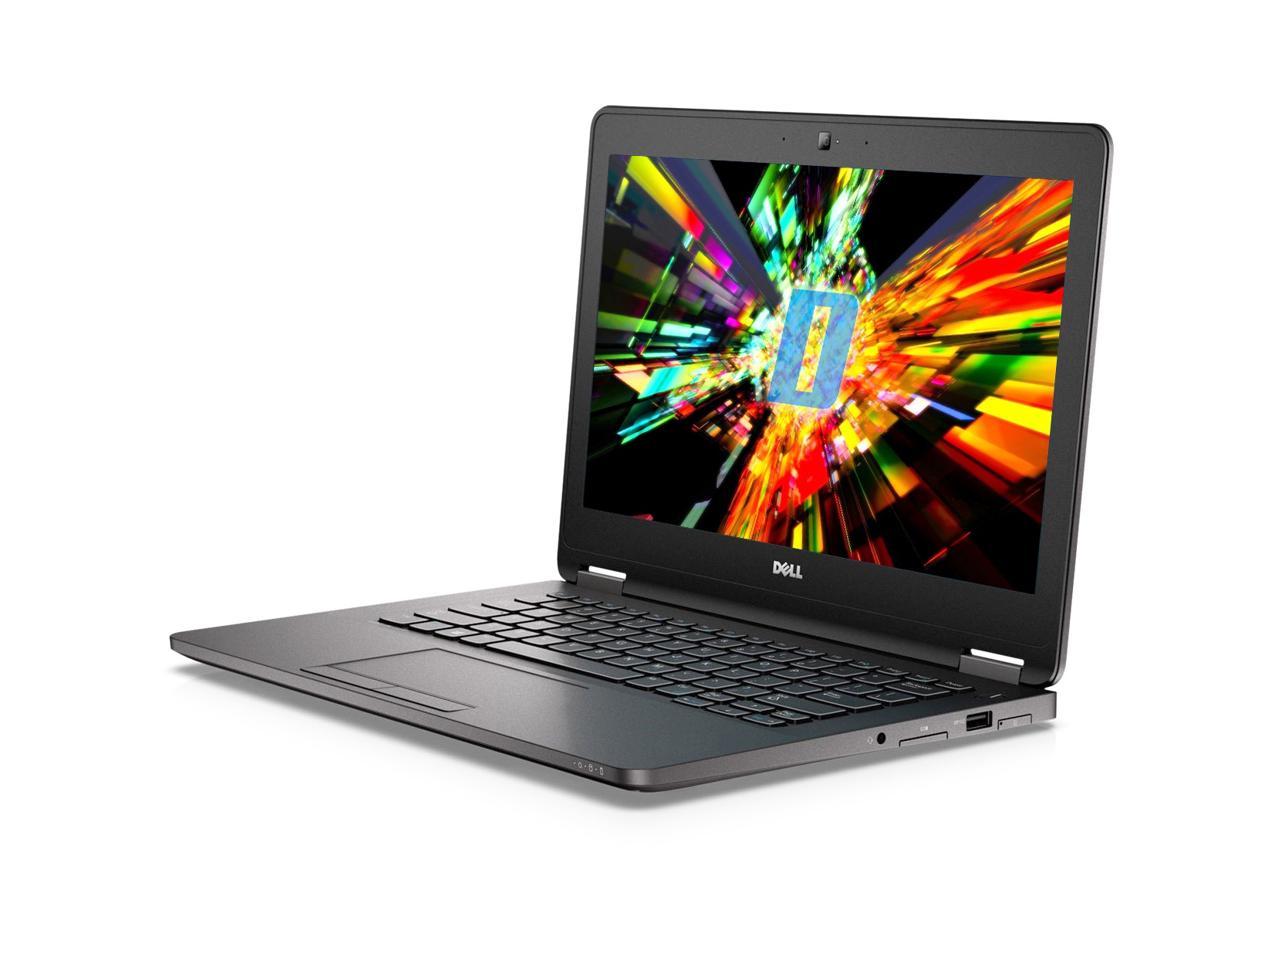 Dell Latitude E7270 12.5" Laptop, Intel Core i5 6300U 2.4Ghz, 16GB DDR4, 256GB NVMe PCIe M.2 SSD, HDMI, Webcam, Windows 10 Pro x64